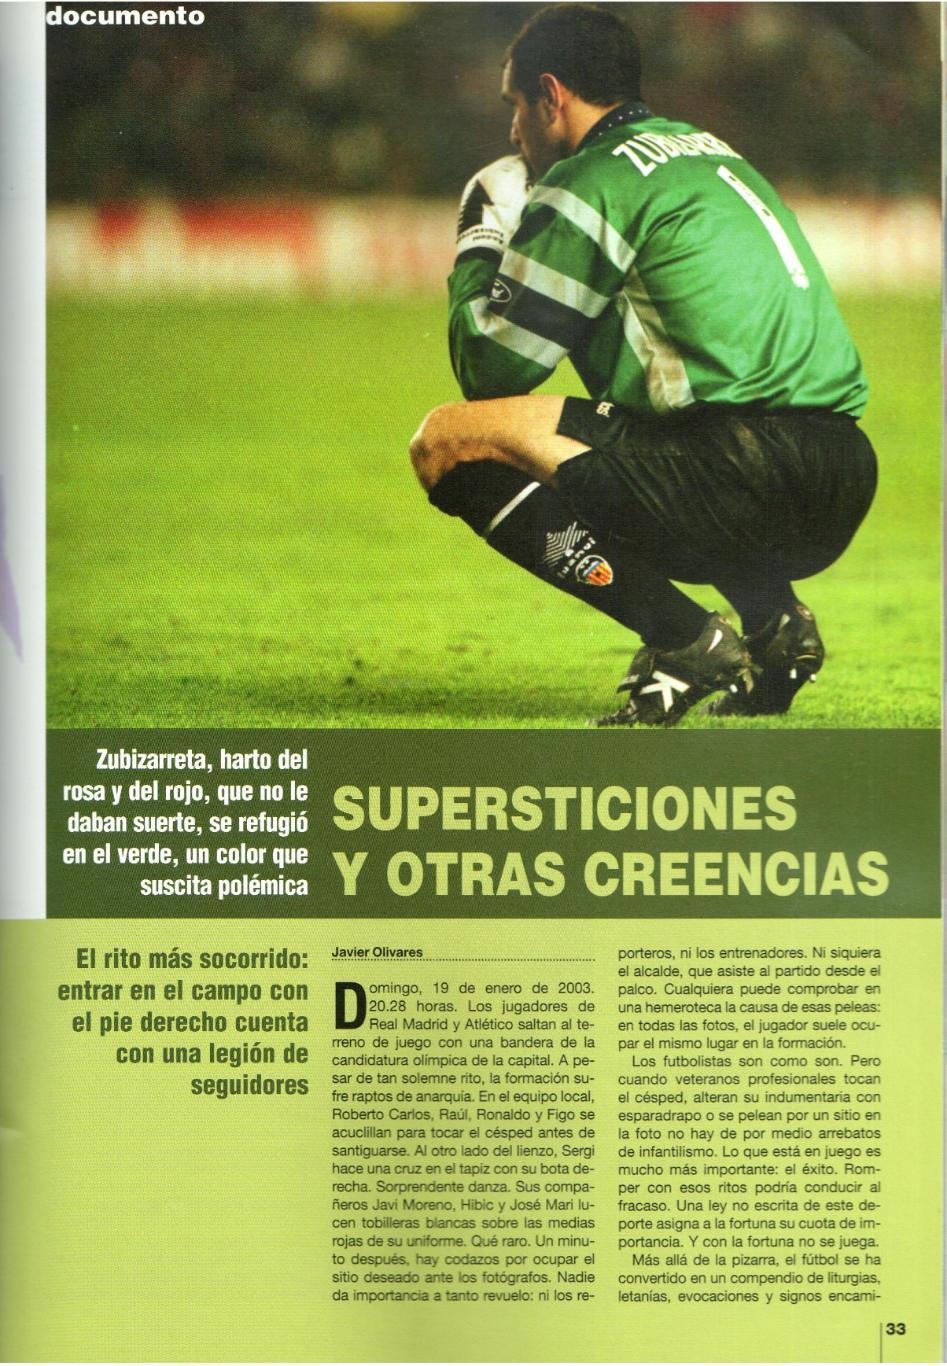 Официальный журнал Королевской Федерации футбола Испании RFEF 2003 Март 4